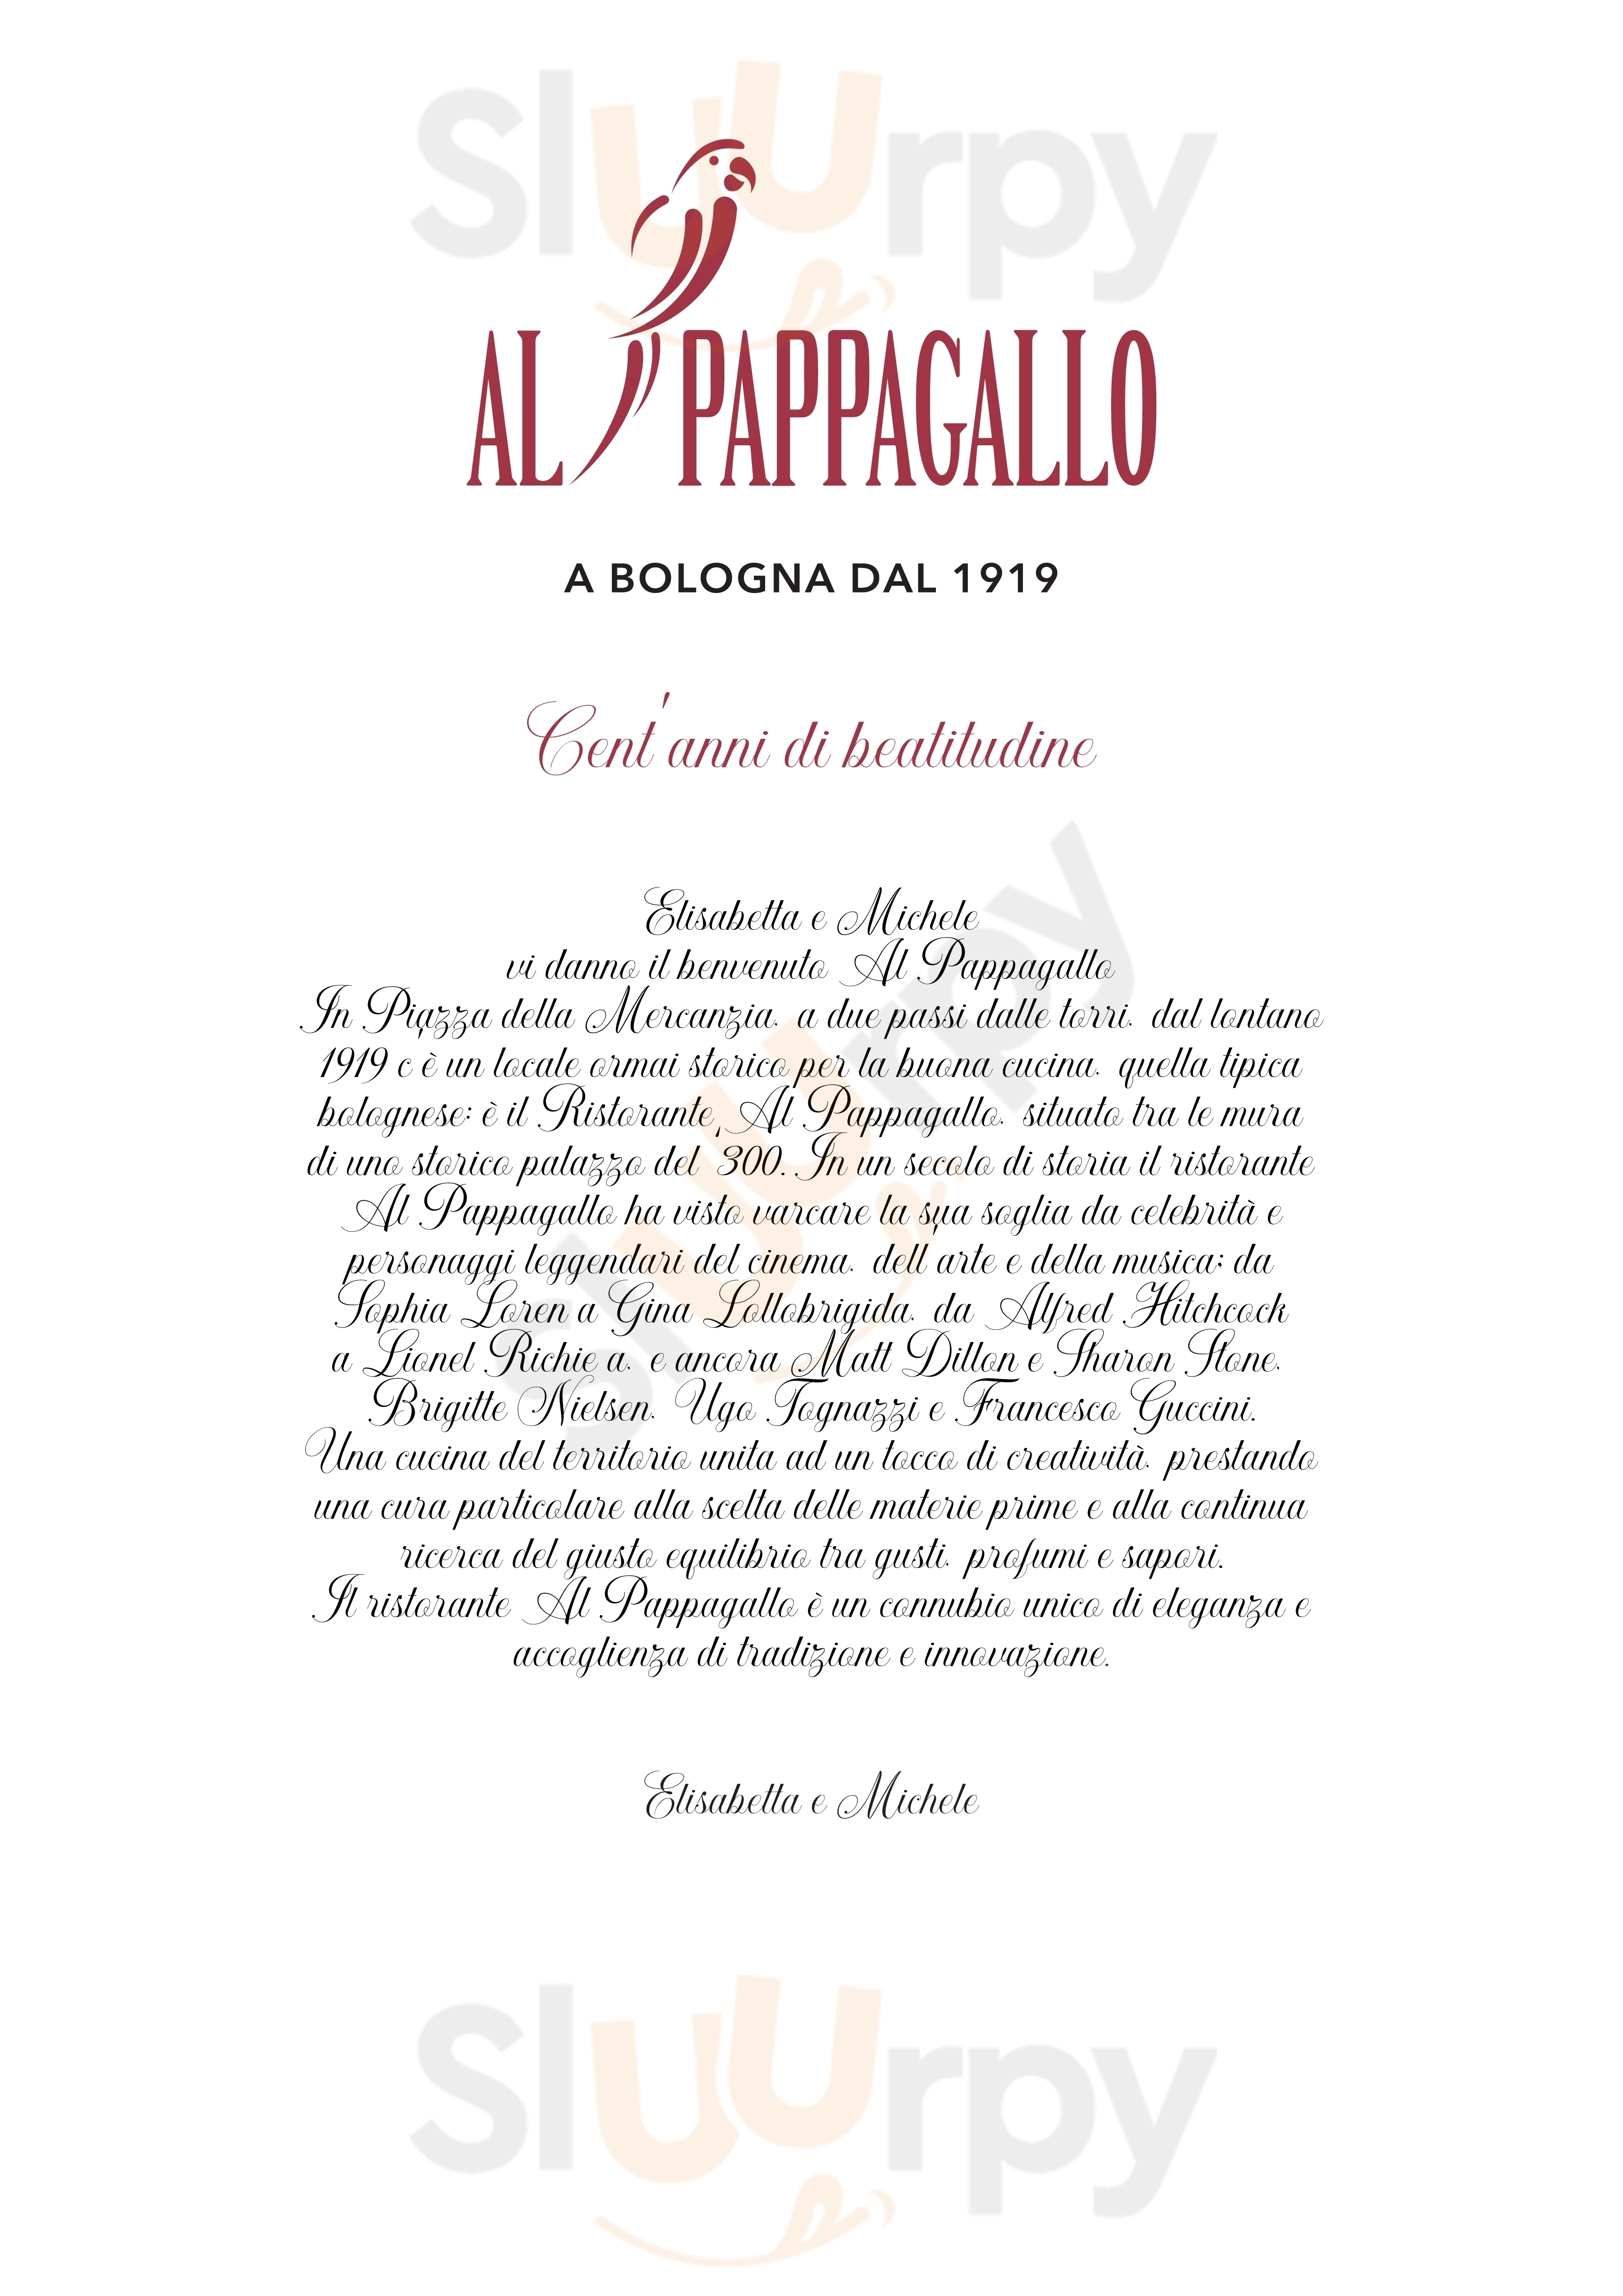 Ristorante Pappagallo Bologna menù 1 pagina